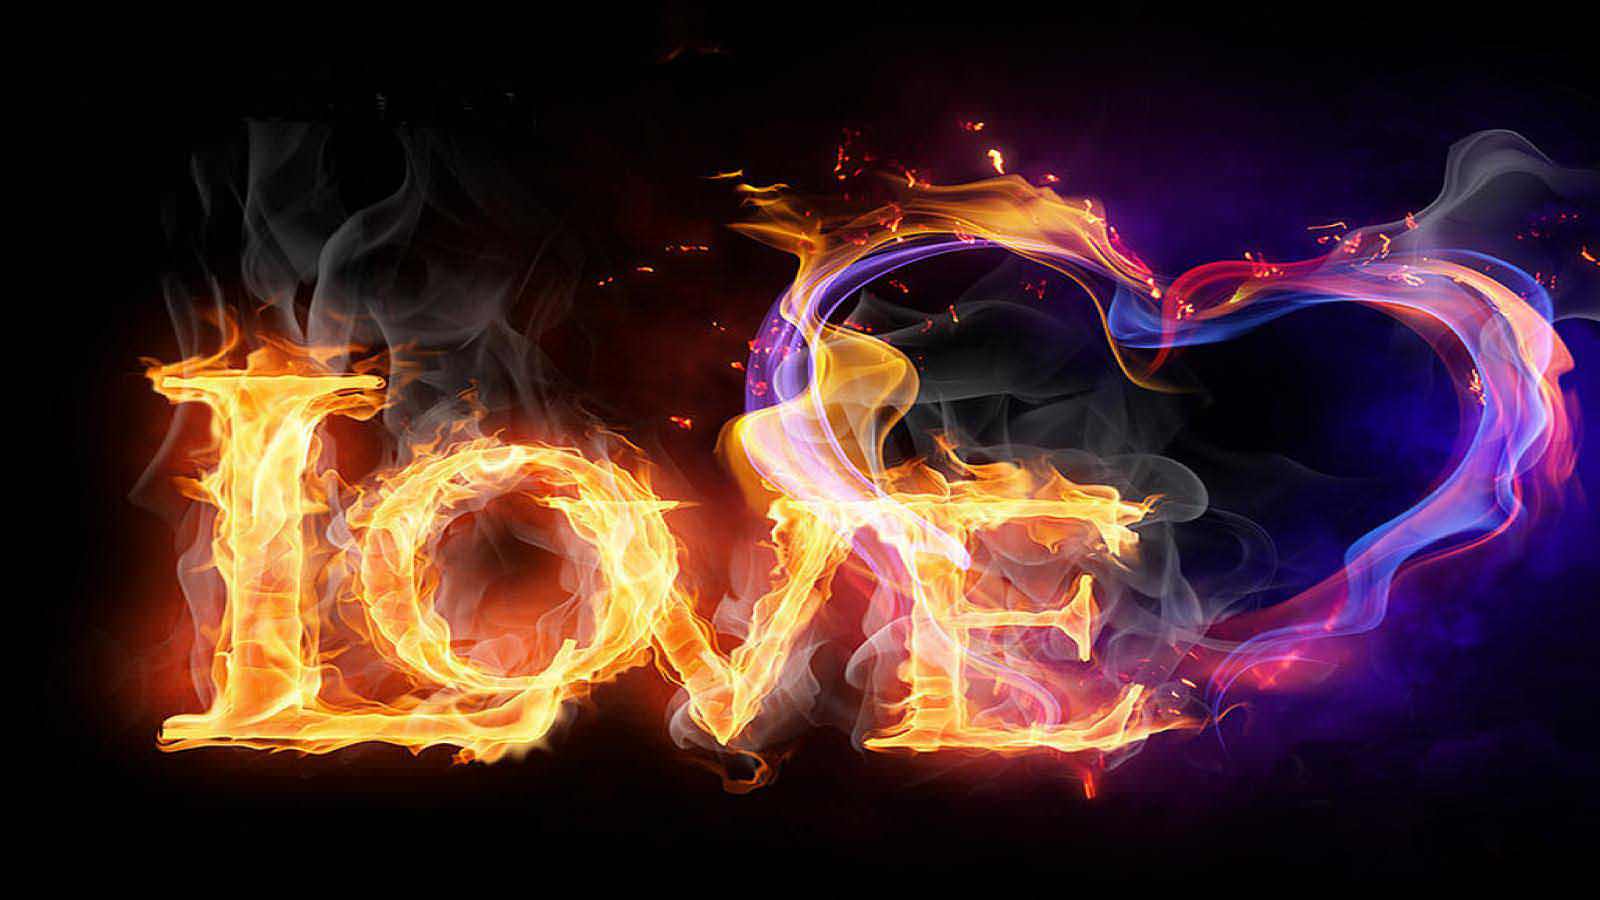 Love Heart Fire Photo Bank Wallpaper 1600x900 PC Wallpaper